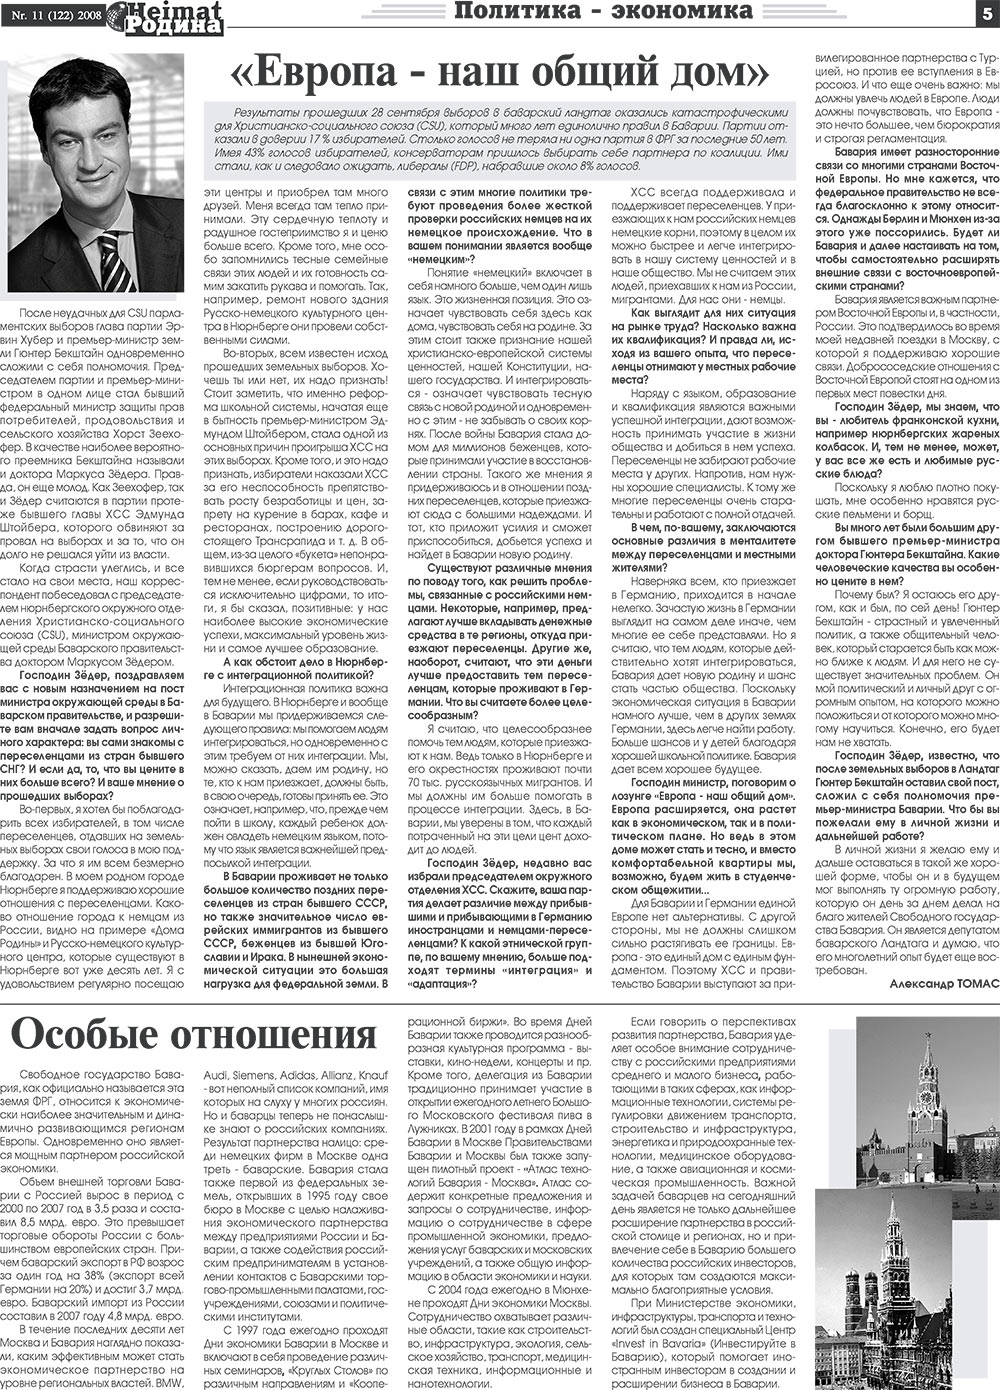 Heimat-Родина (газета). 2008 год, номер 11, стр. 5